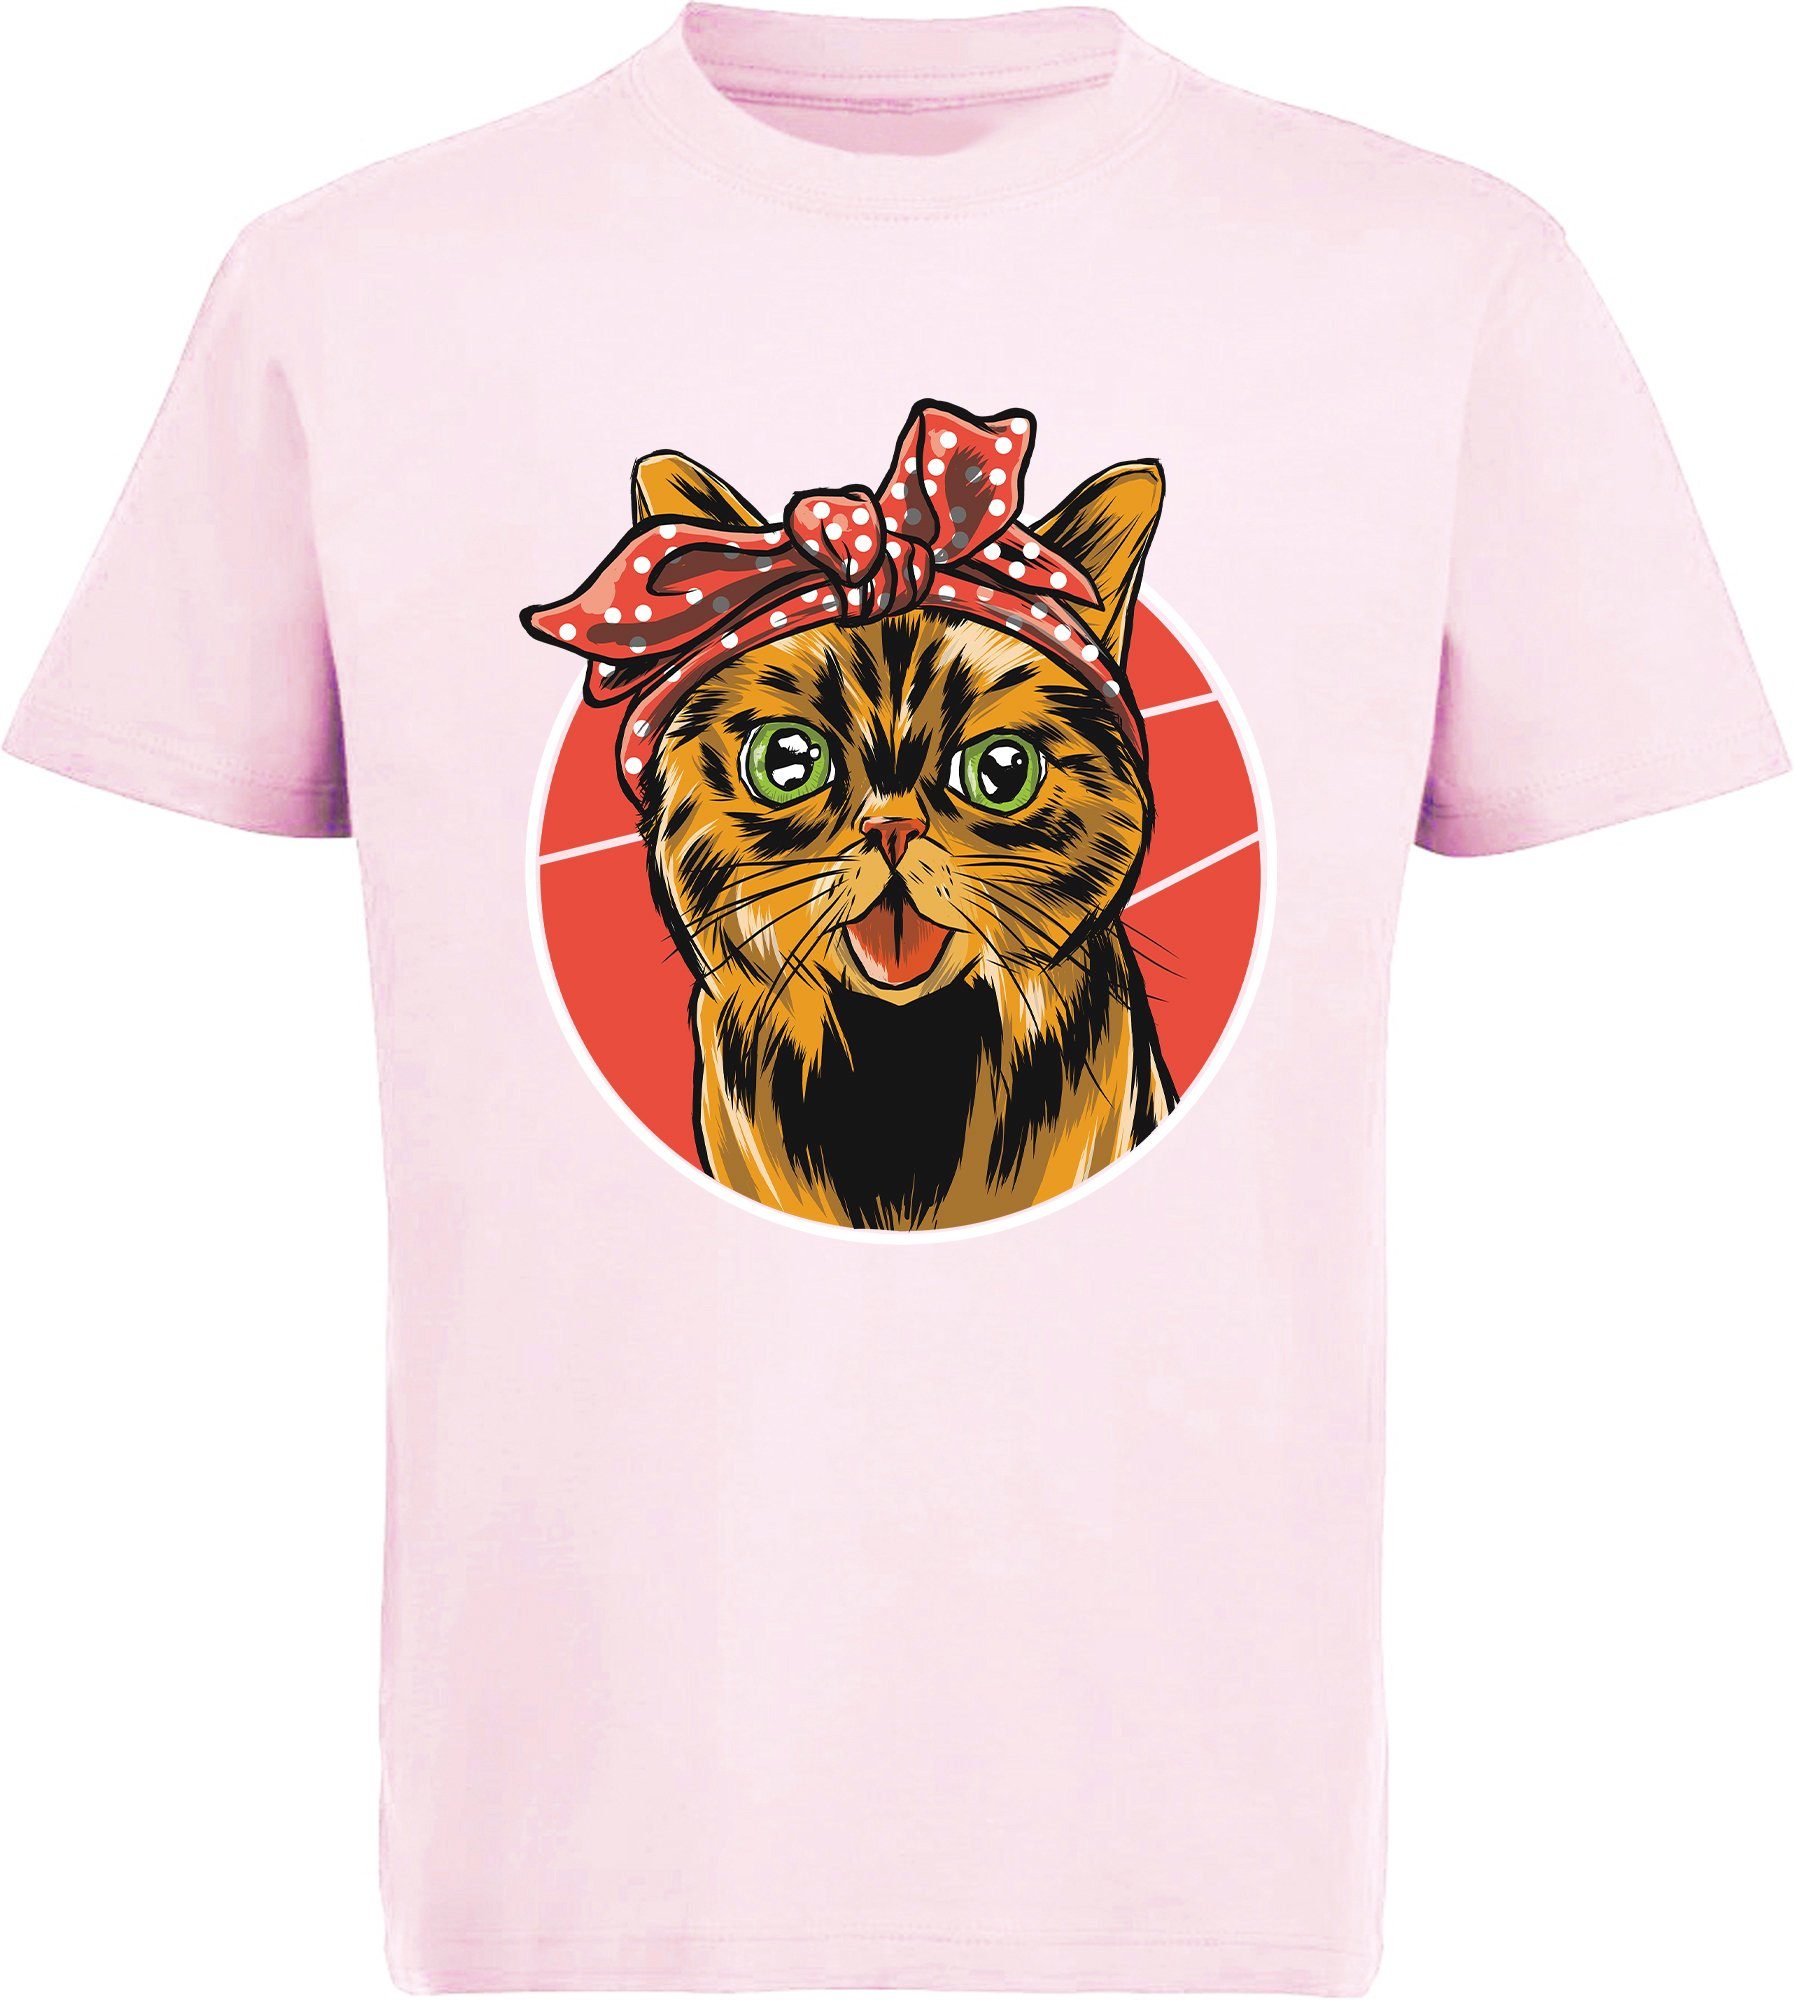 Katze i103 Katze, schwarz, Baumwollshirt Kinder mit MyDesign24 rosa, mit rot, T-Shirt Schleife Print-Shirt bedrucktes weiß, Mädchen